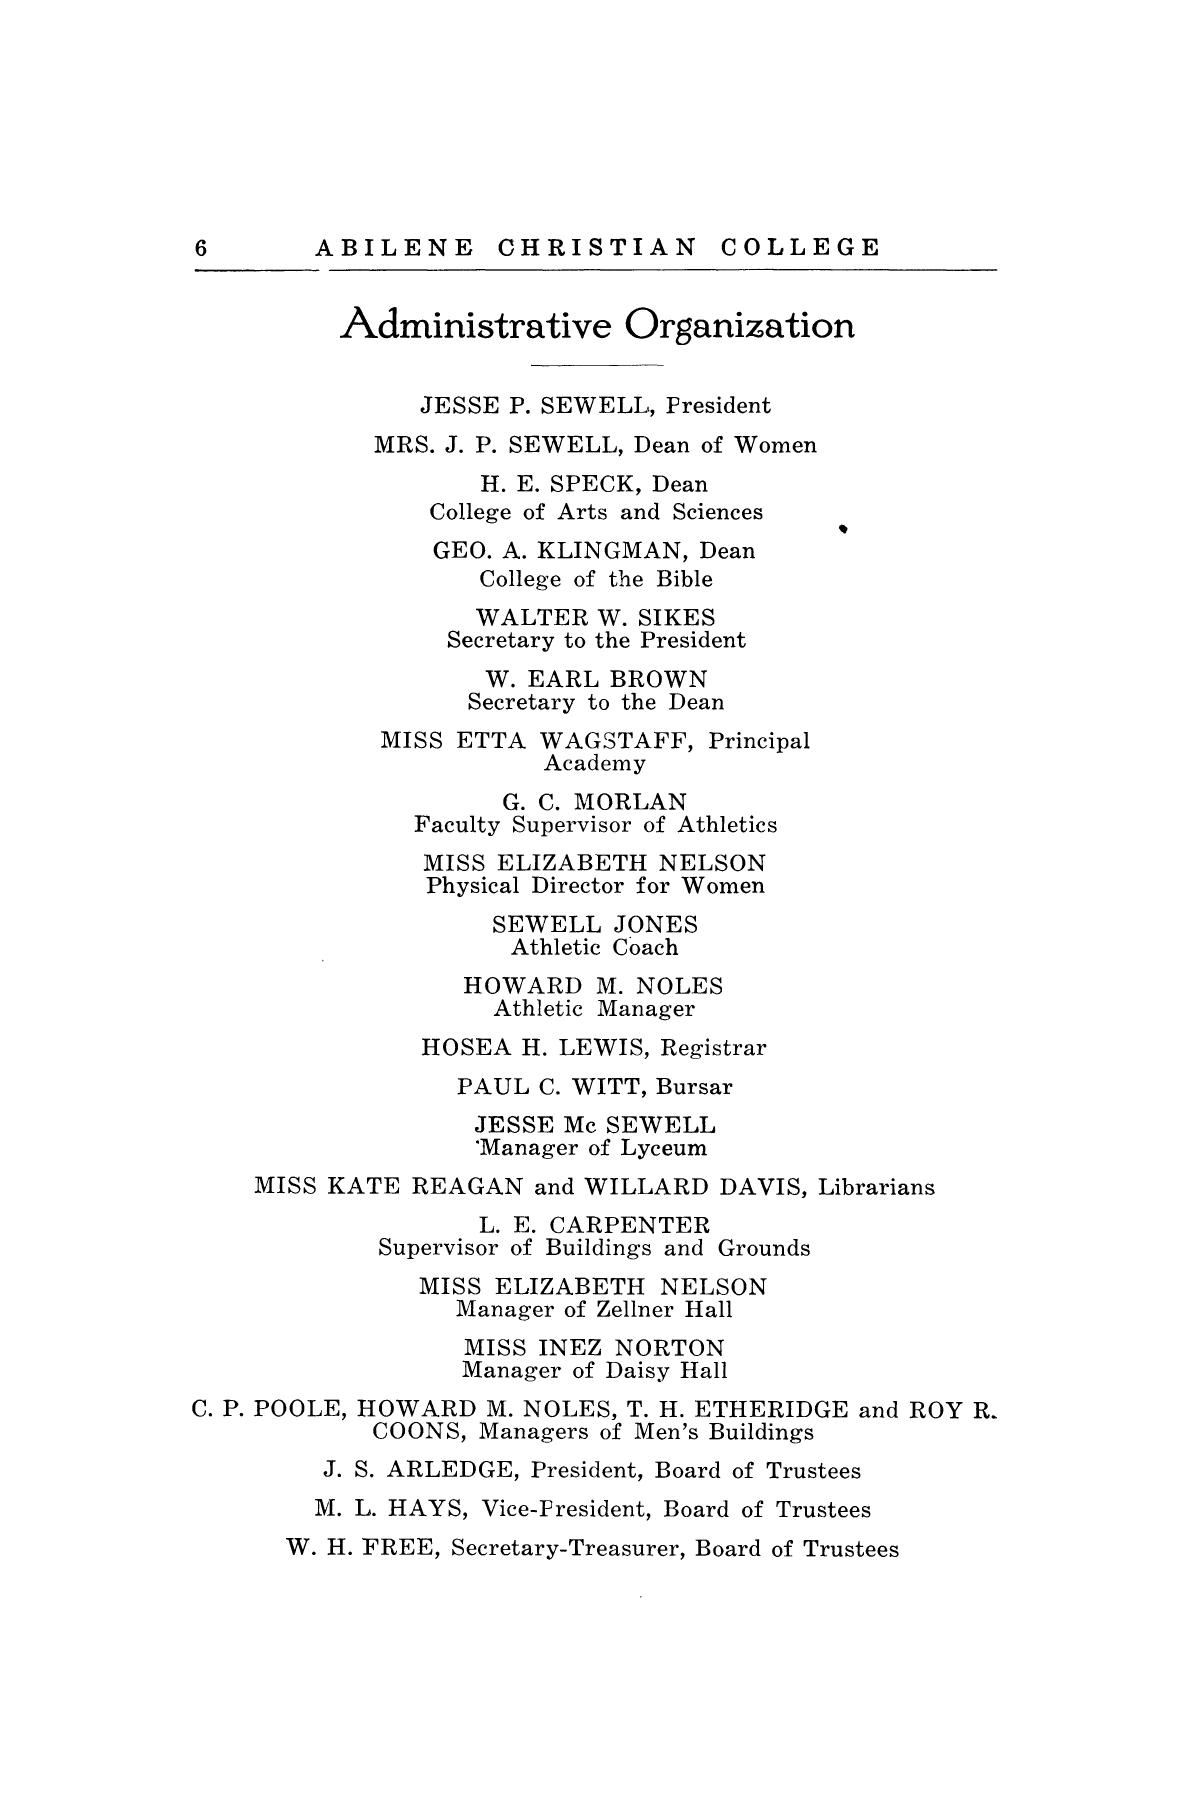 Catalog of Abilene Christian College, 1920-1921
                                                
                                                    6
                                                